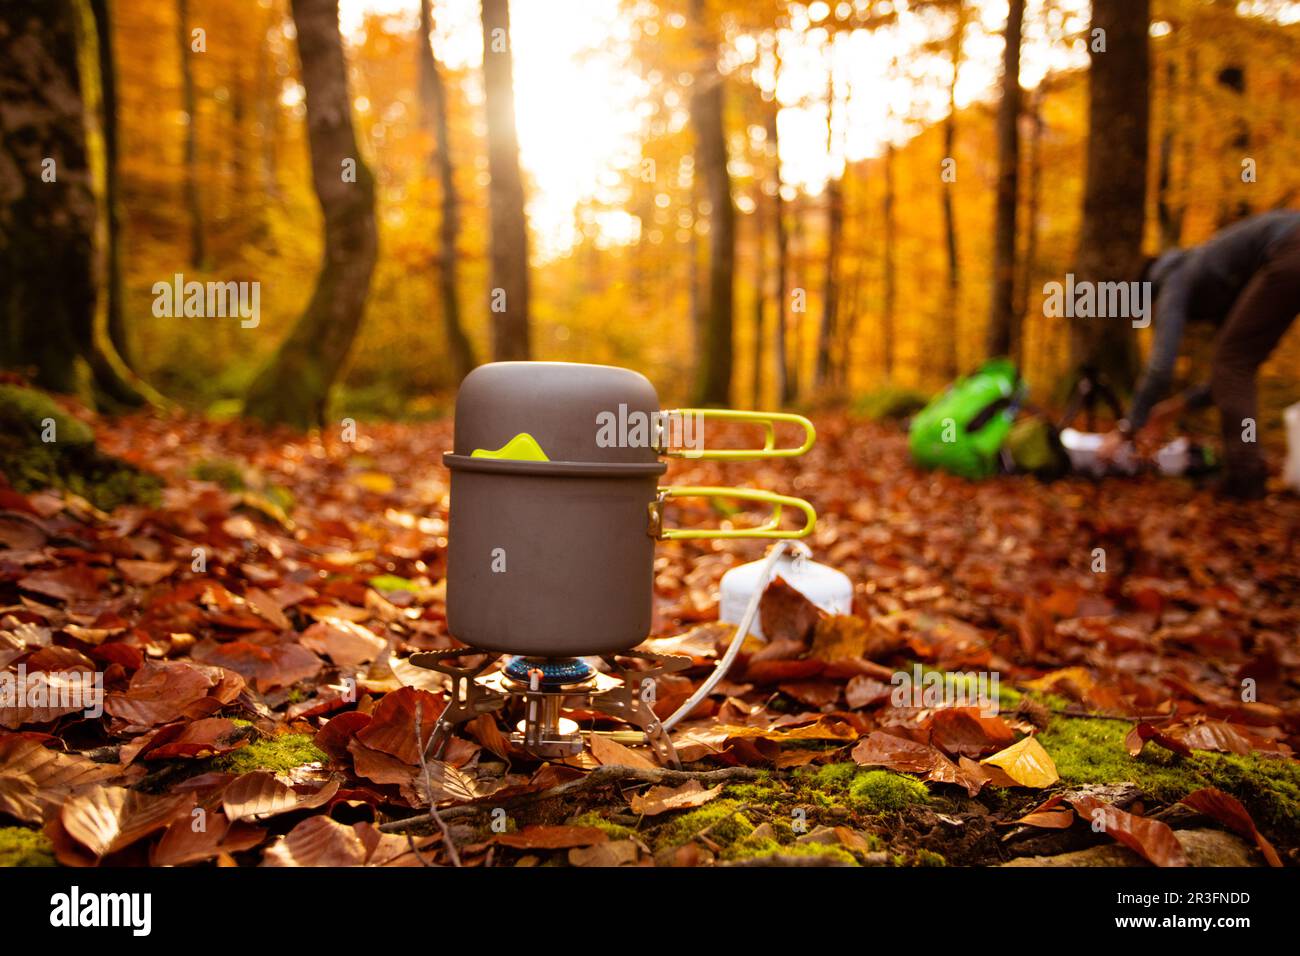 La fin de l'automne convient pour le camping avec un équipement spécial Banque D'Images